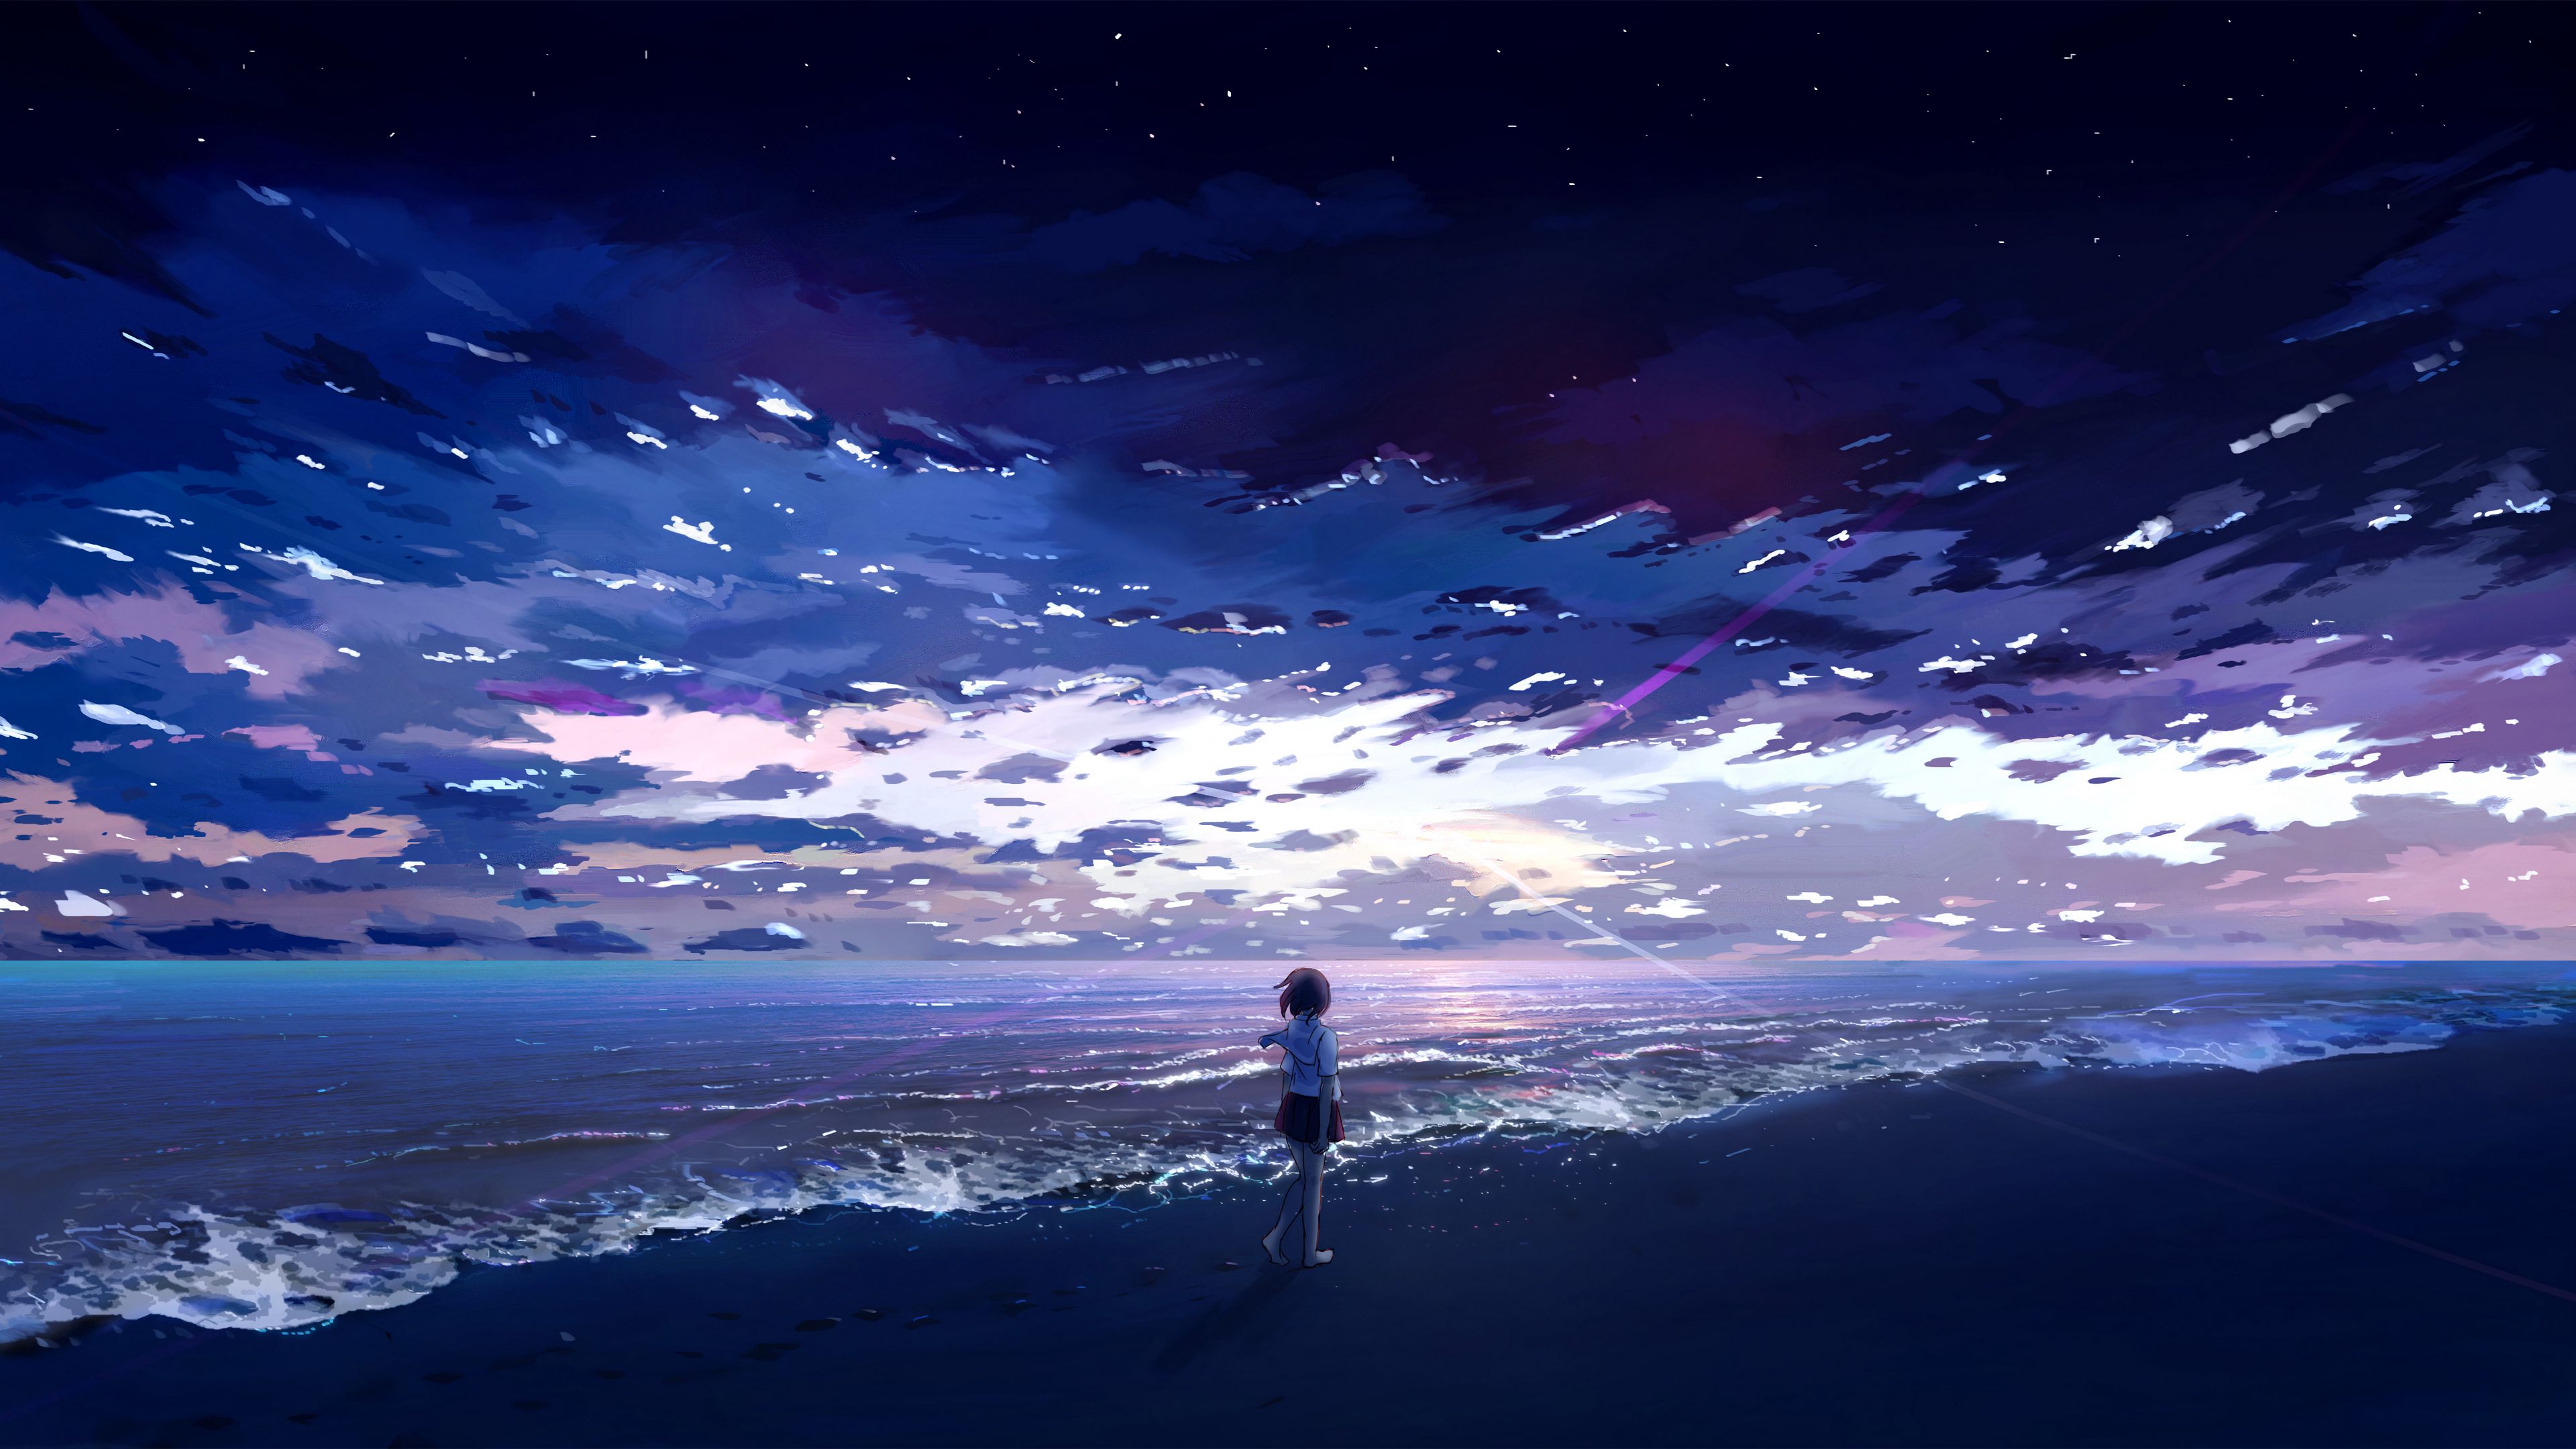 4K anime beach Wallpapers: Tận hưởng bầu không khí mát mẻ của bãi biển với hình nền 4K anime beach. Với độ phân giải cao, đầy màu sắc, hình ảnh mang tới cảm giác sống động như thật. Hãy dành ra chút thời gian để thưởng thức những hình ảnh đẹp này để cảm nhận rõ ràng tinh thần yên tĩnh của bãi biển.